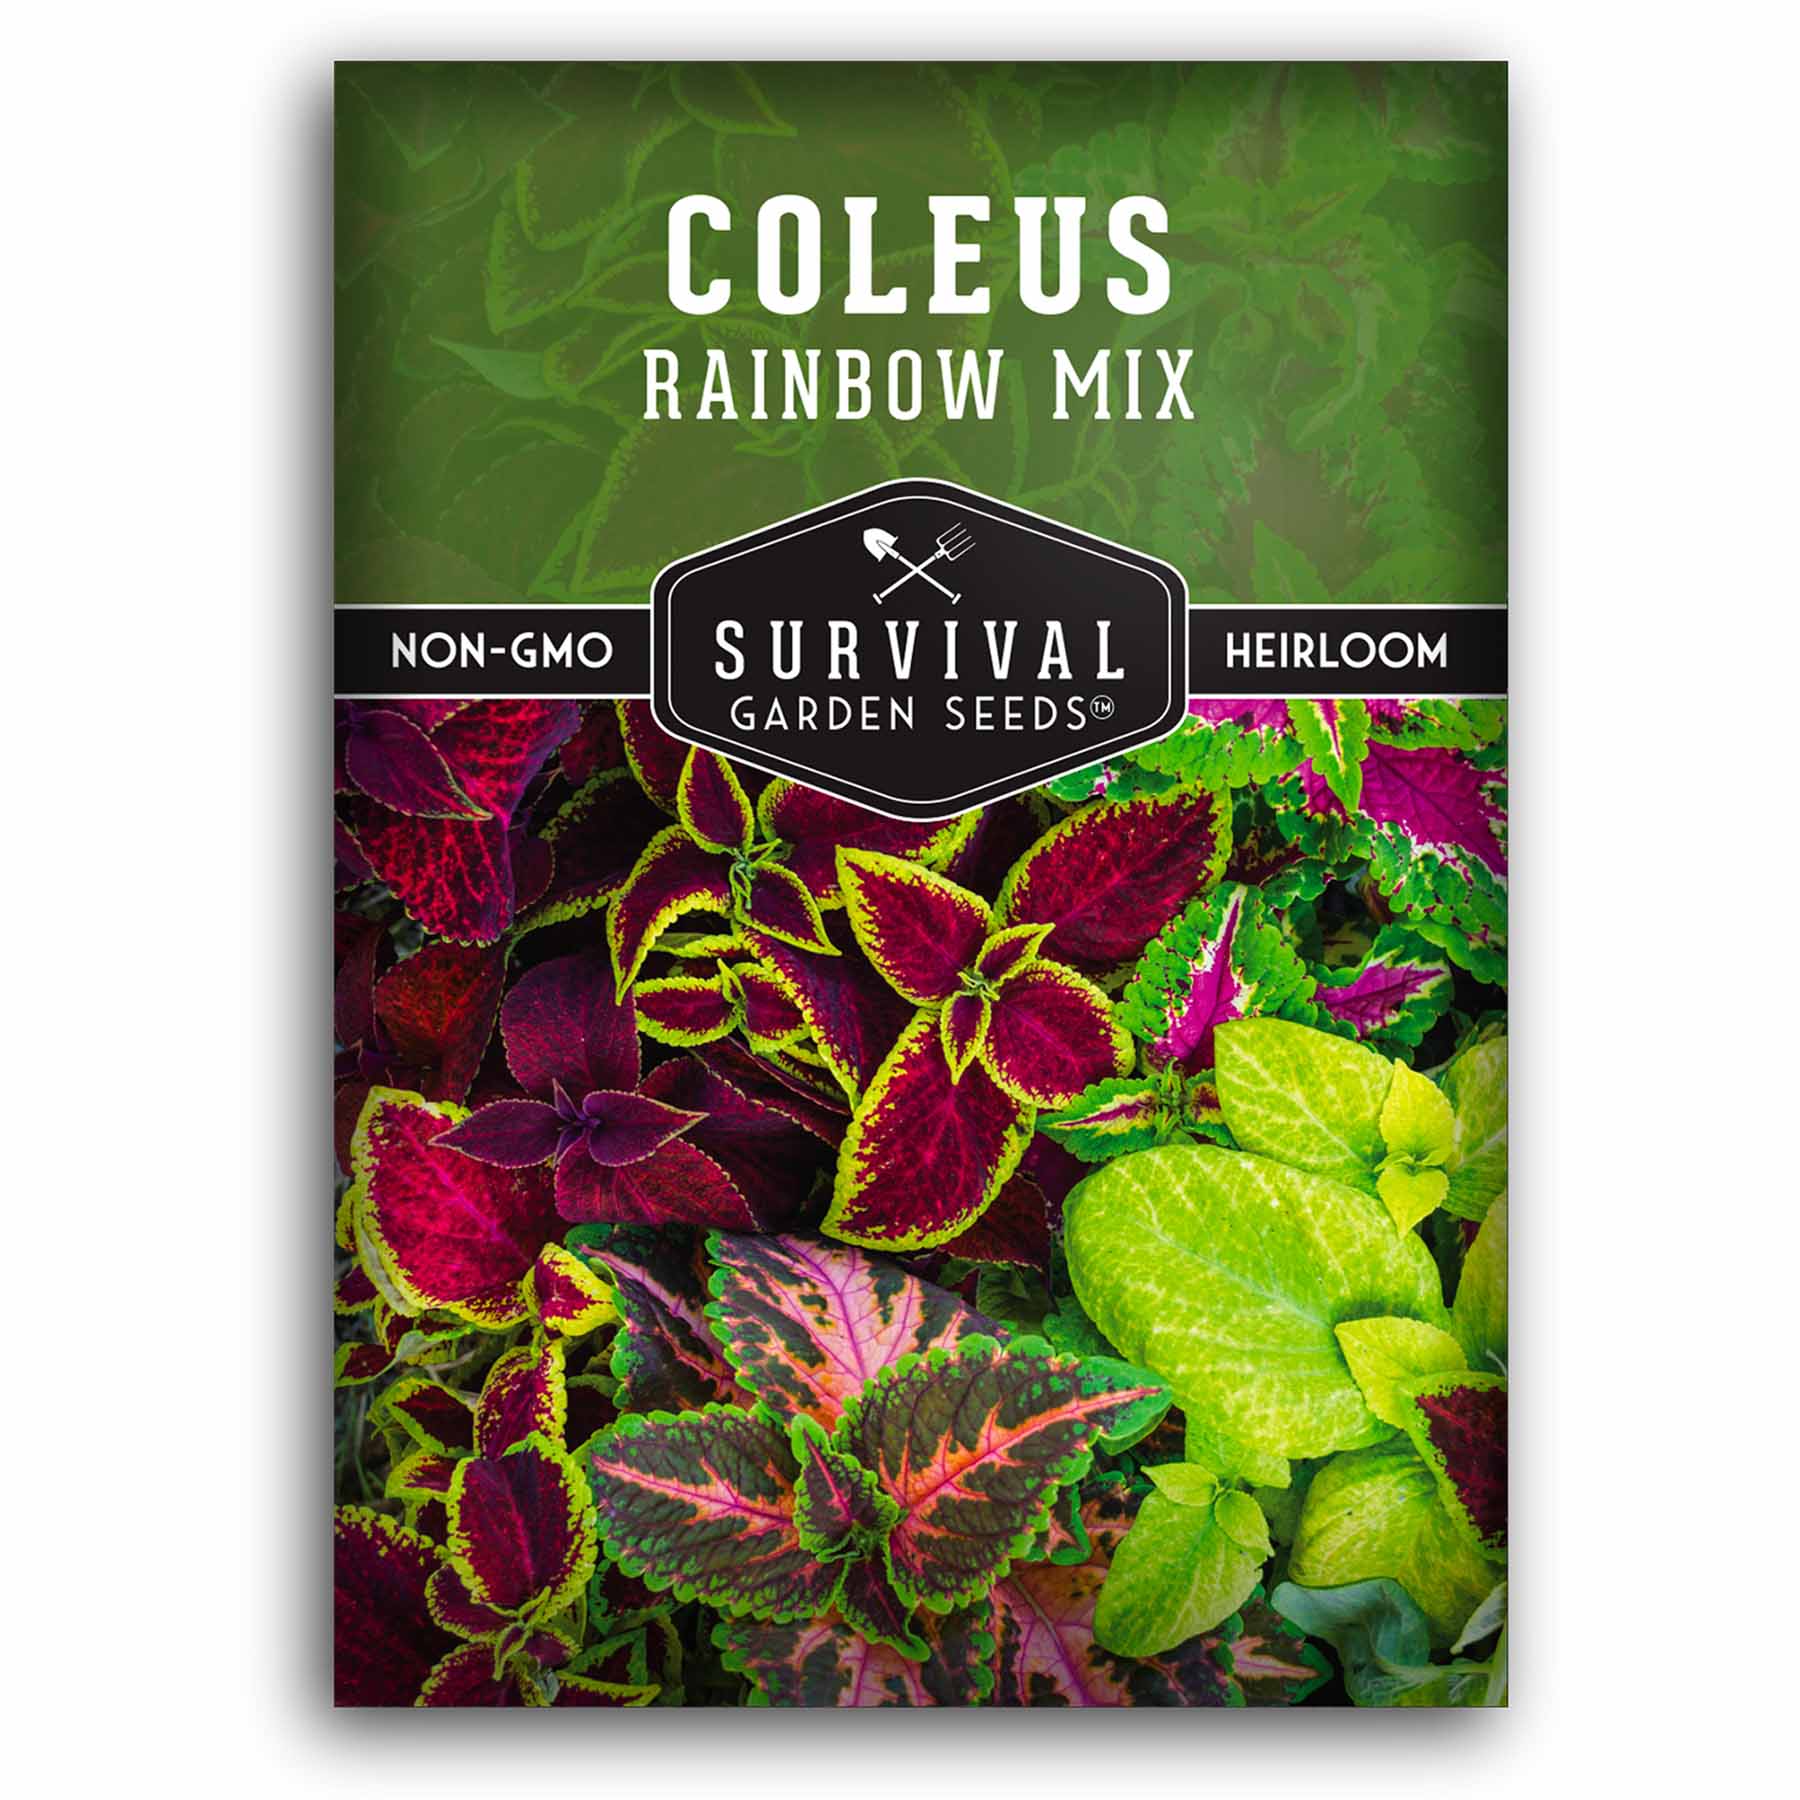 Rainbow mix coleus seeds